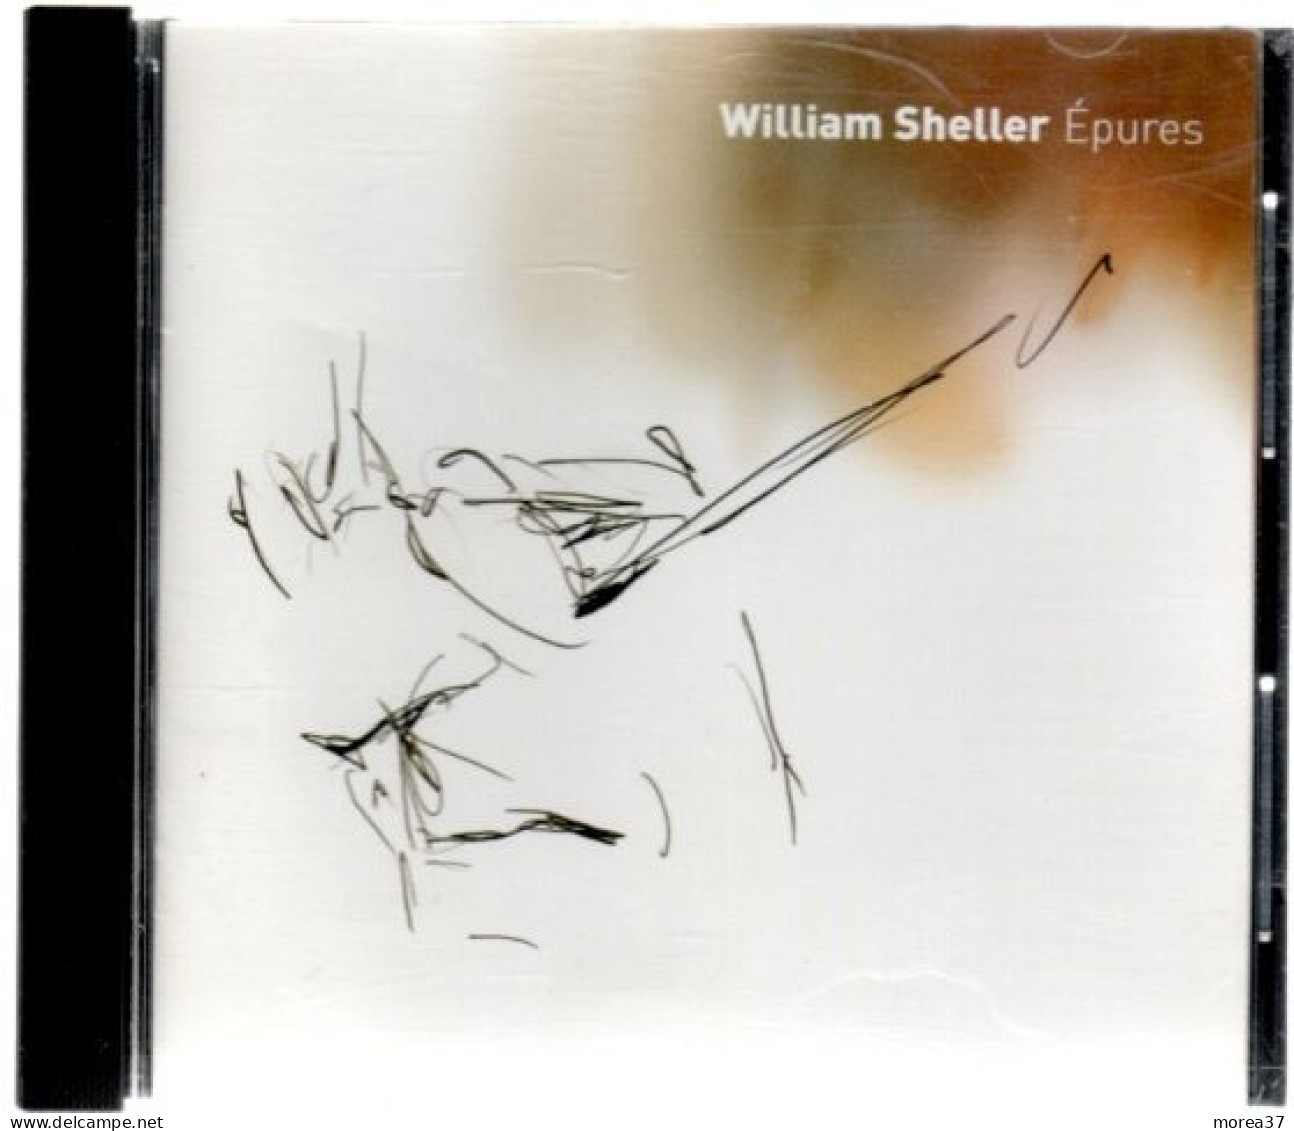 WILLIAM SHELLER  Epures       (REF CD 2) - Otros - Canción Francesa